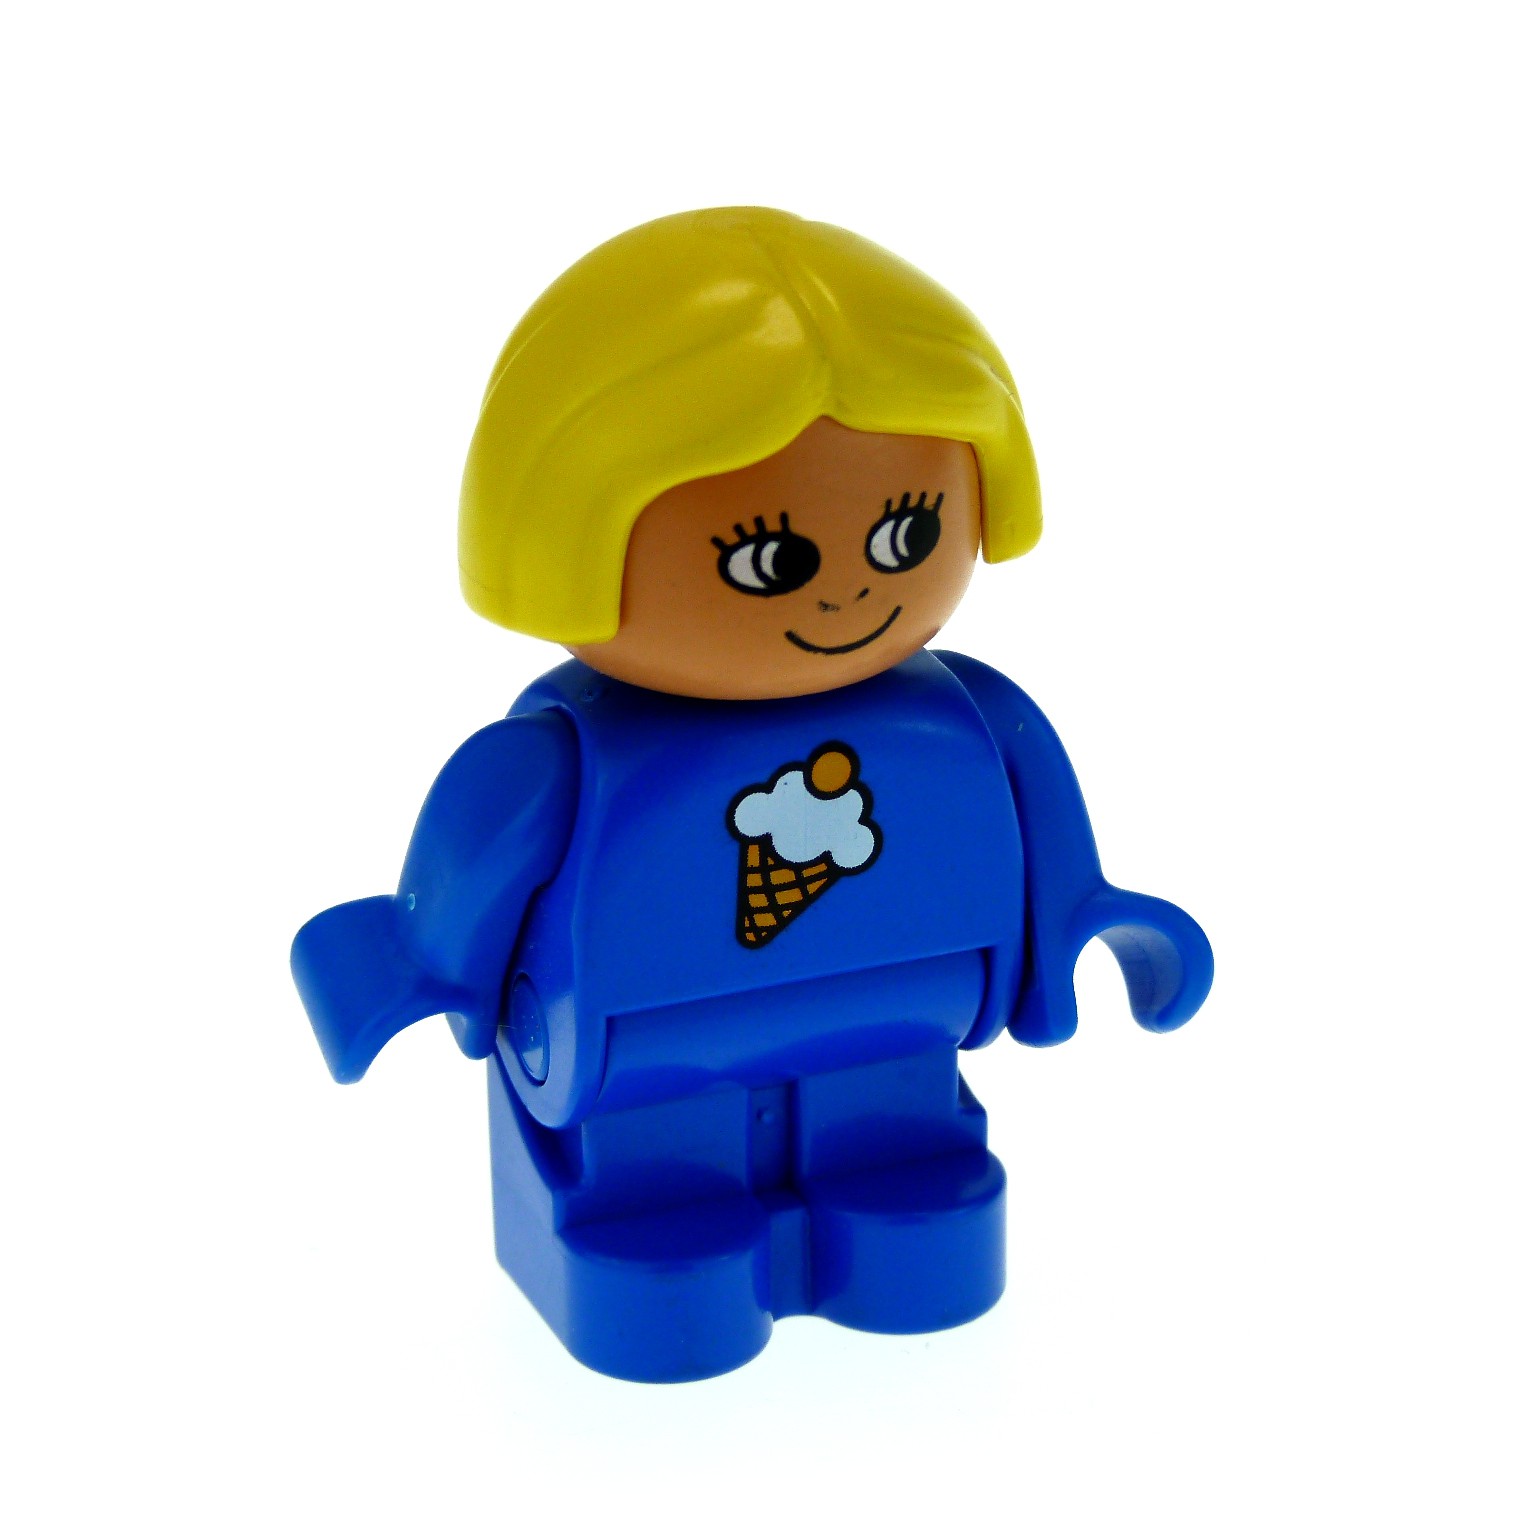 1 x Lego Duplo Figur Kind Mädchen blau Aufdruck Eis gelb 4943pb009